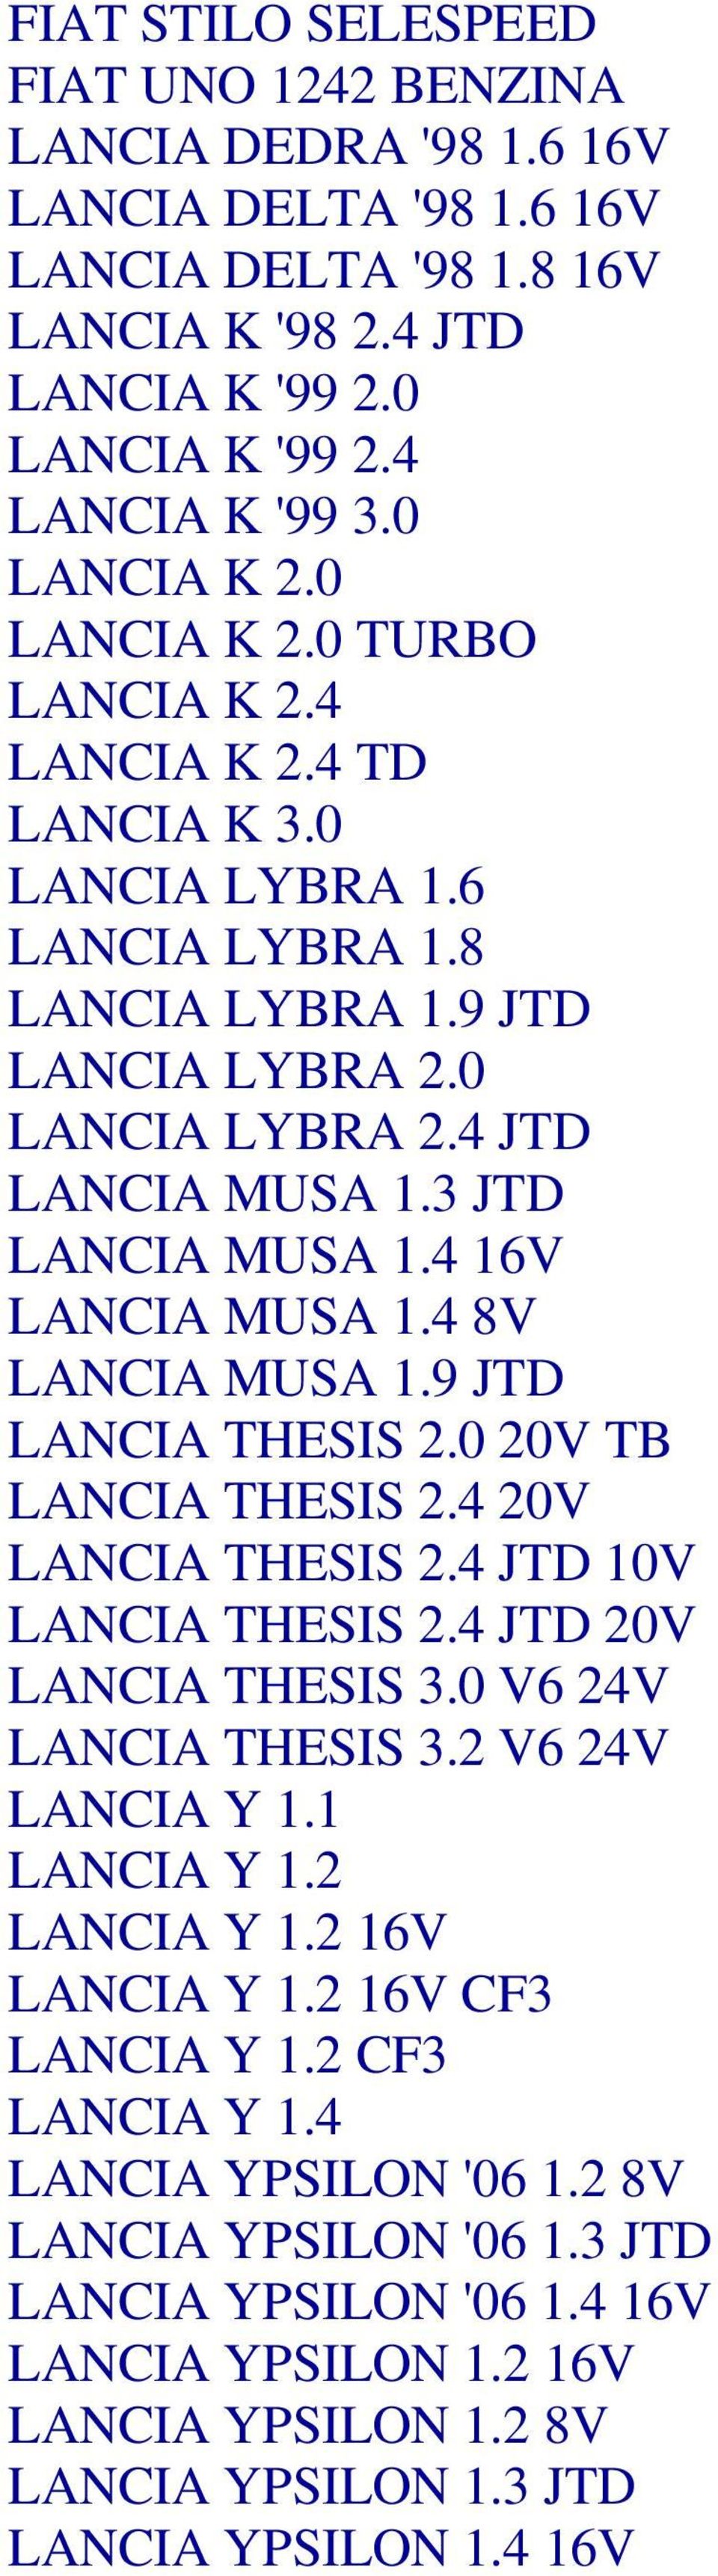 3 JTD LANCIA MUSA 1.4 16V LANCIA MUSA 1.4 8V LANCIA MUSA 1.9 JTD LANCIA THESIS 2.0 20V TB LANCIA THESIS 2.4 20V LANCIA THESIS 2.4 JTD 10V LANCIA THESIS 2.4 JTD 20V LANCIA THESIS 3.